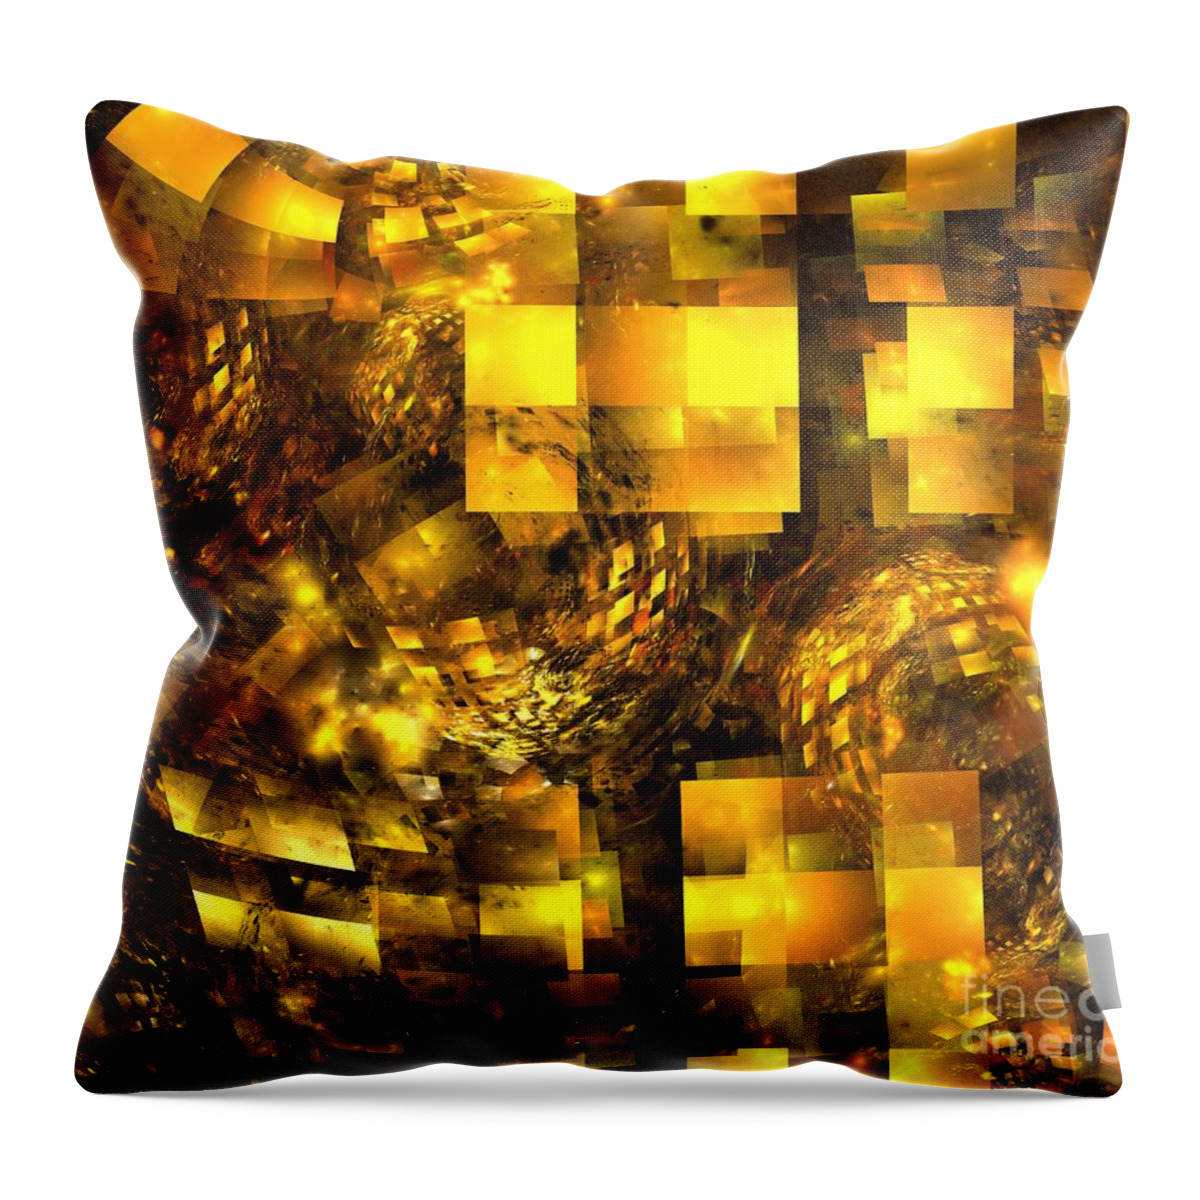 Apophysis Throw Pillow featuring the digital art Golden Metropolis by Kim Sy Ok